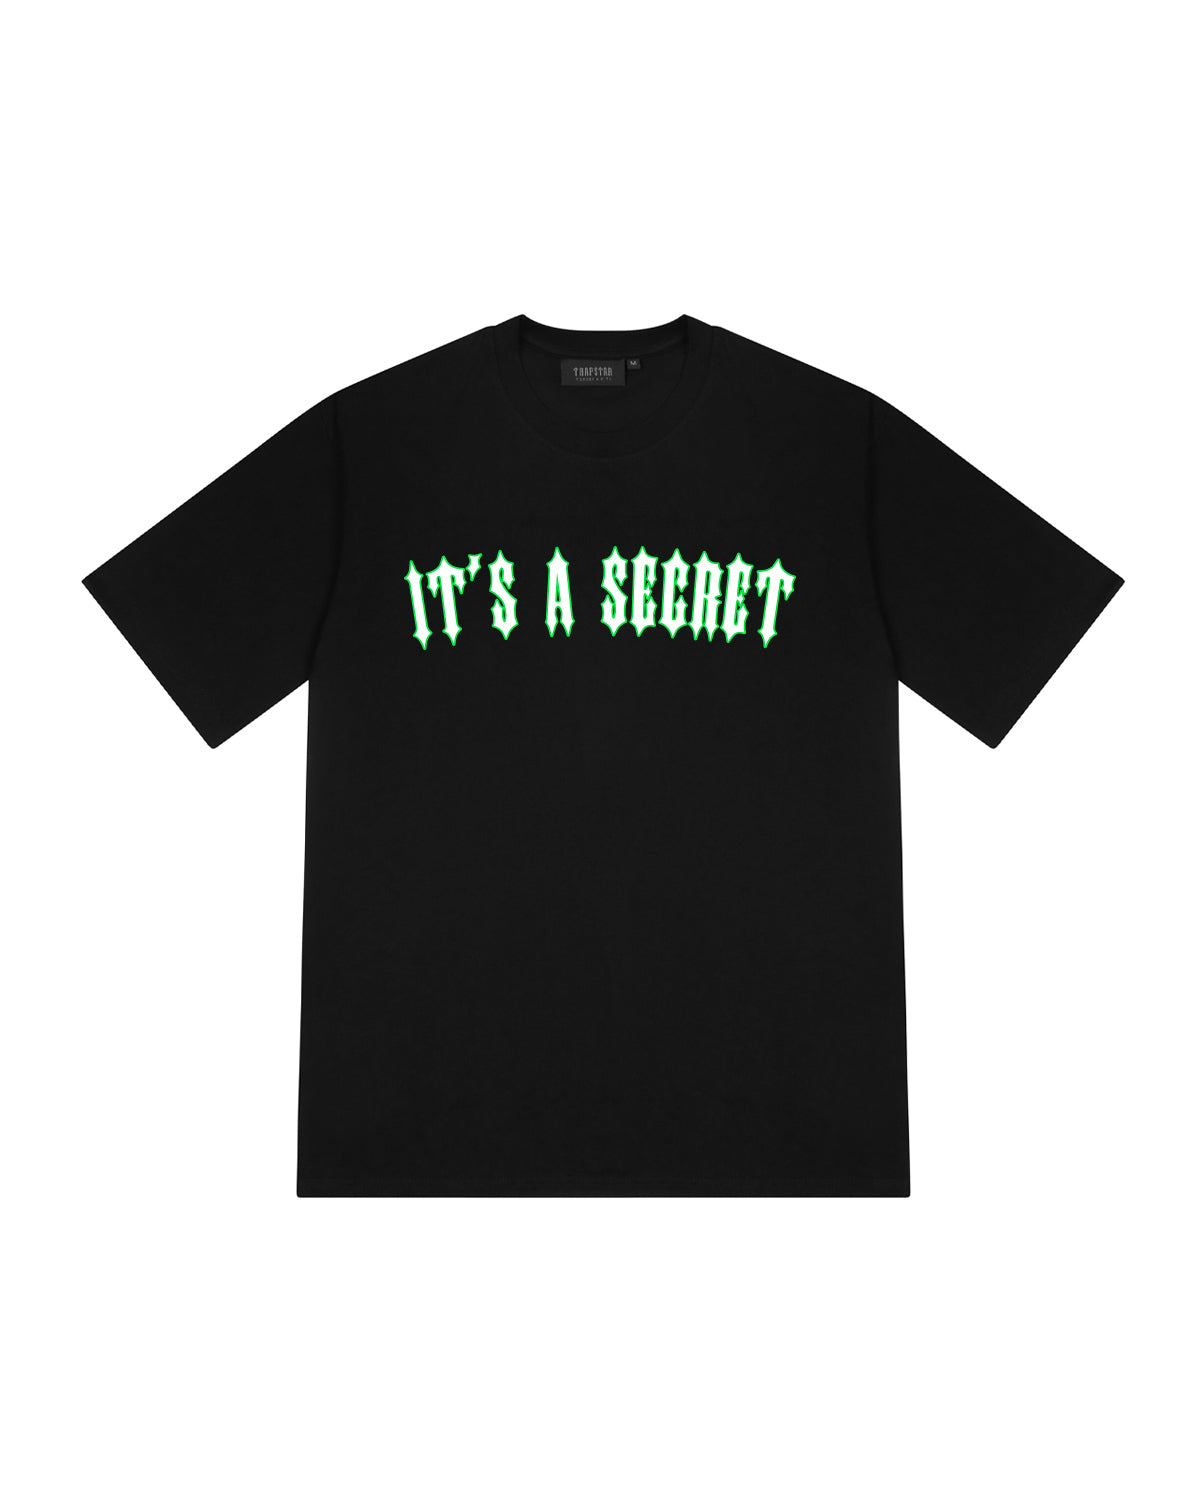 It's A Secret 2.1 Tee - Black/Neon